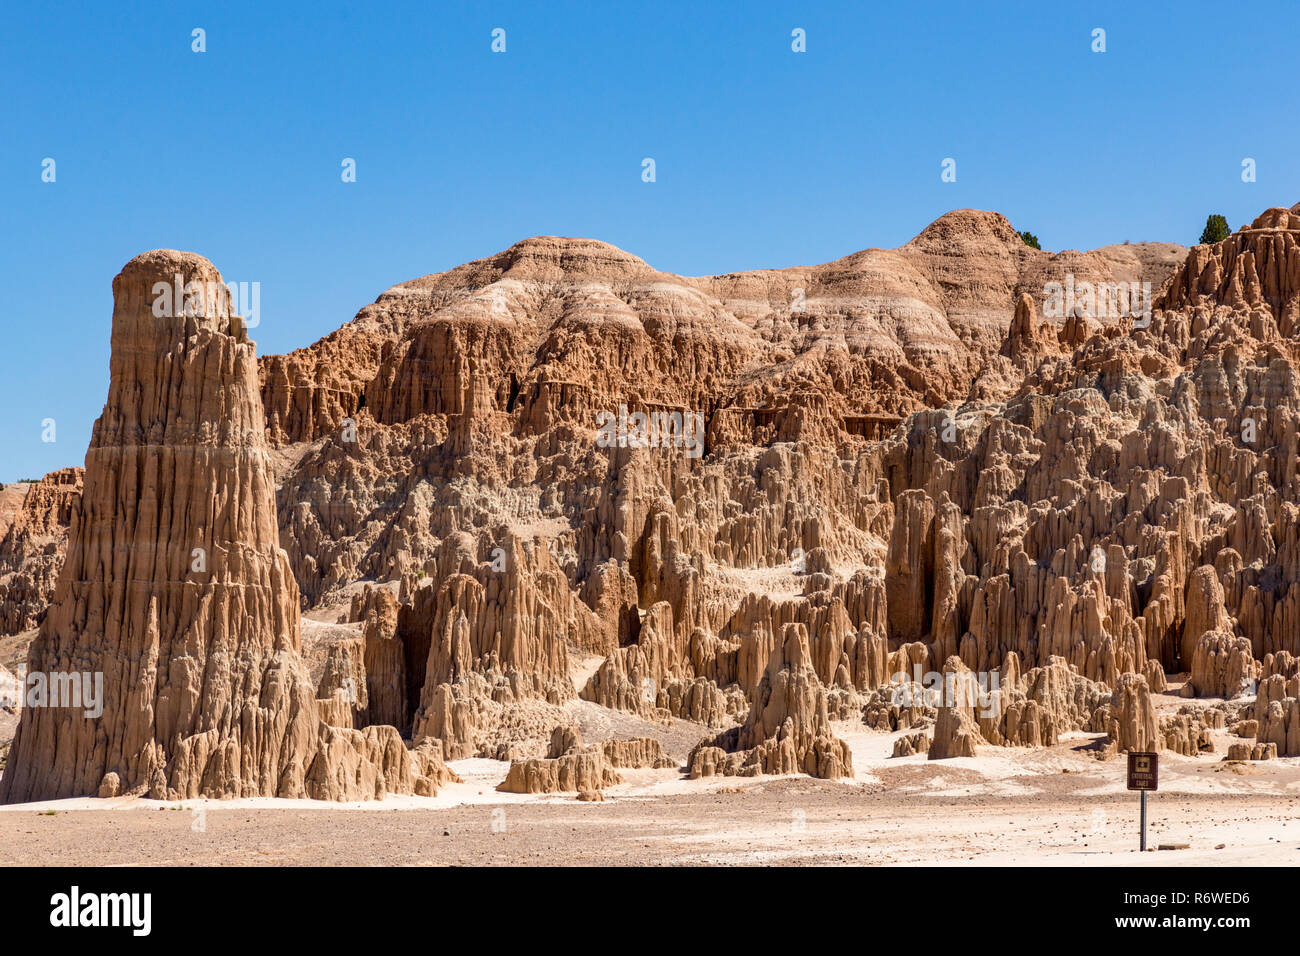 Cathedral Gorge State Park è situato in una lunga e stretta valle nel sud-est in Nevada, dove l'erosione ha scolpito drammatica e pattern unici nel modo Foto Stock